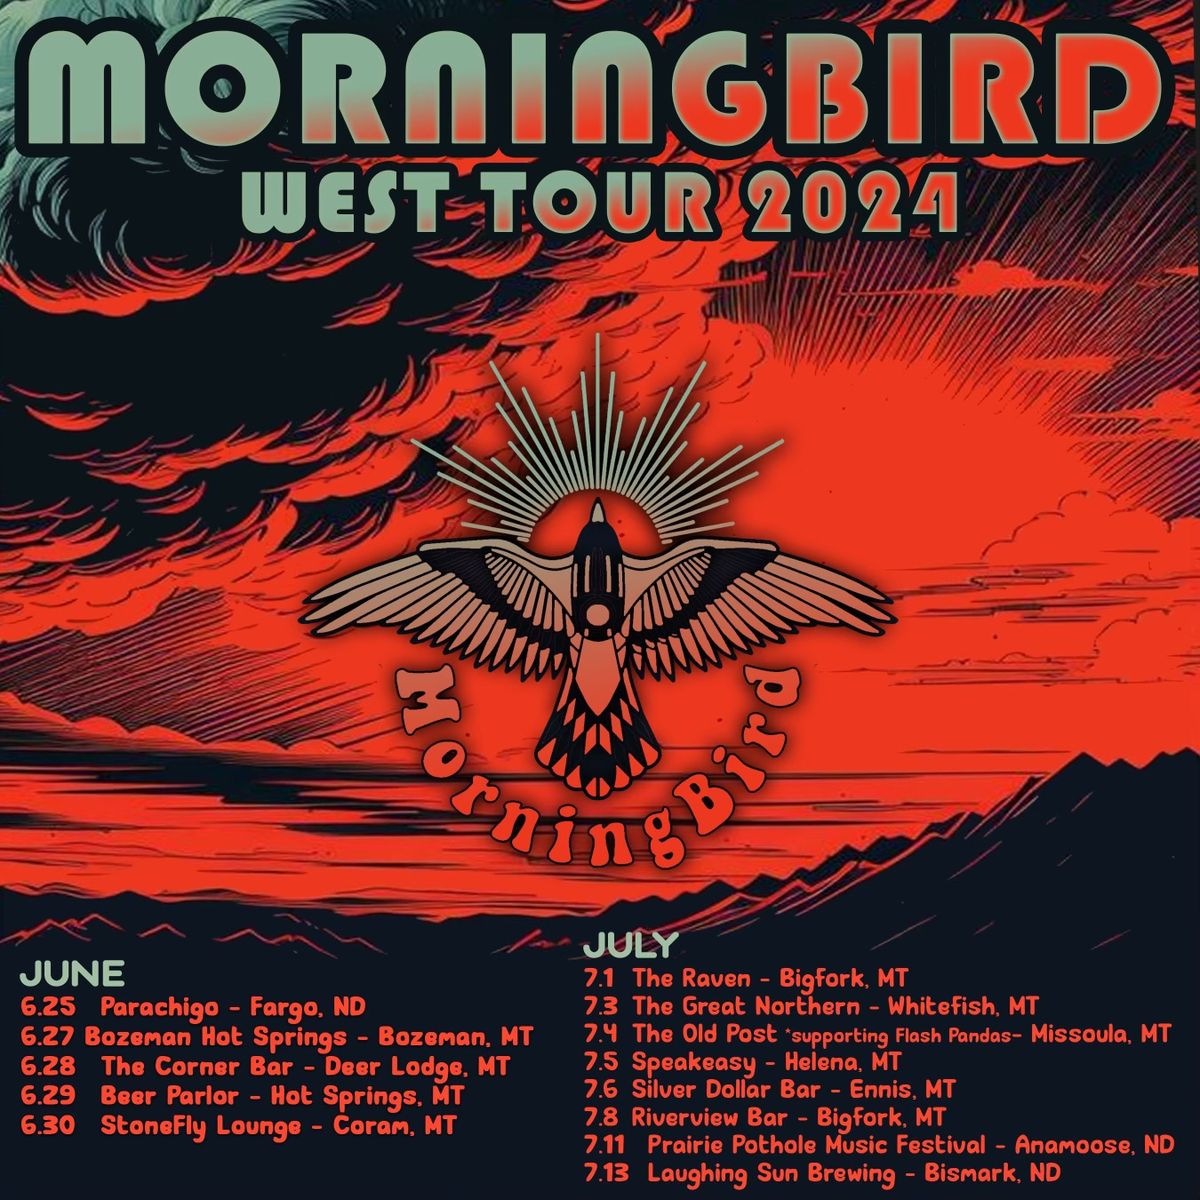 MorningBird kicks off their 3 week West Run at Parachigo - Fargo ND